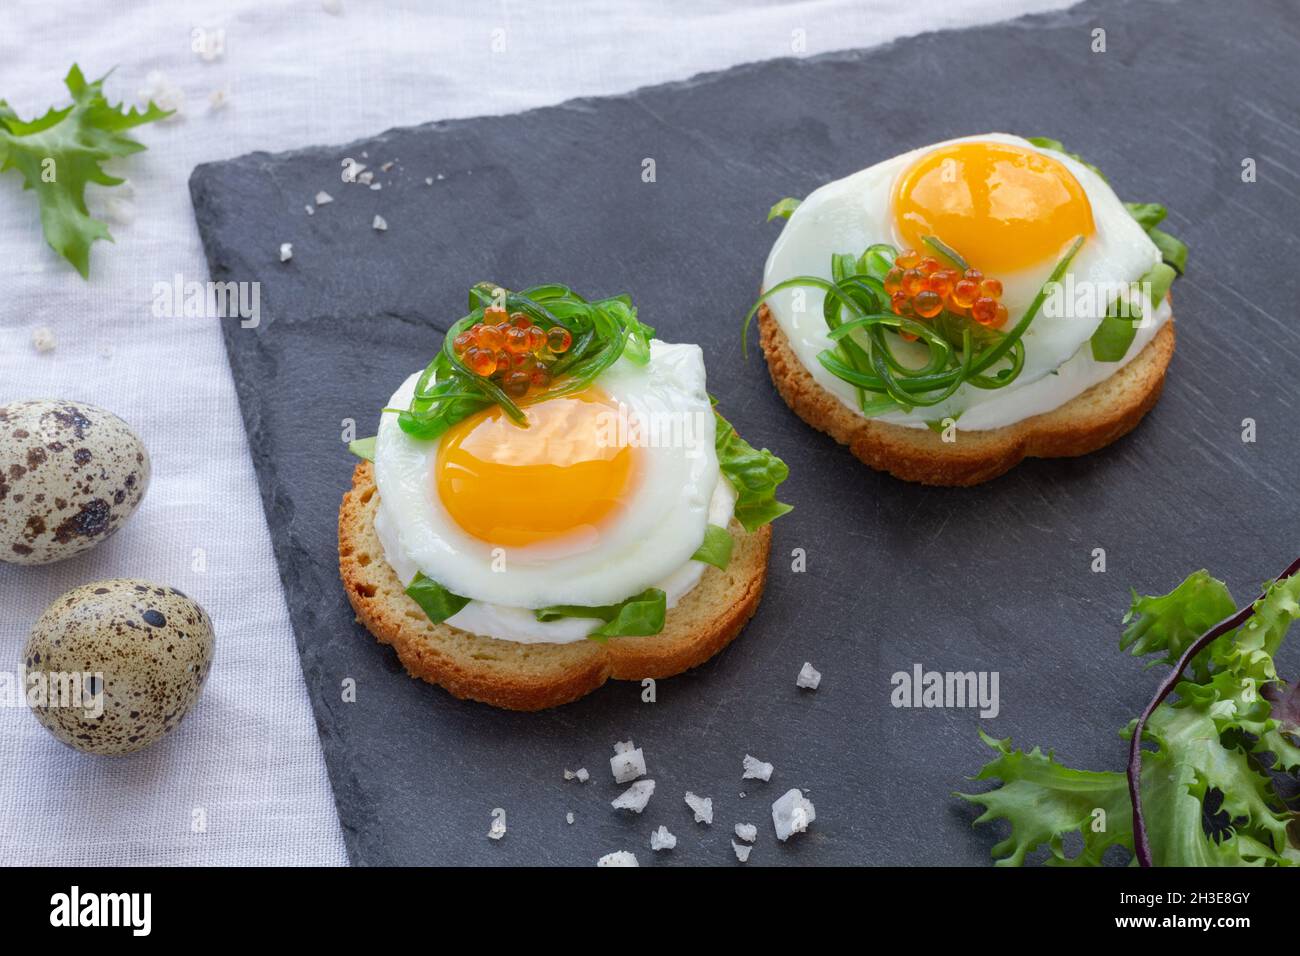 Des canapés appétissants avec du pain croustillant et des œufs de caille frits décorés d'herbes et de caviar servis sur un plateau gris Banque D'Images